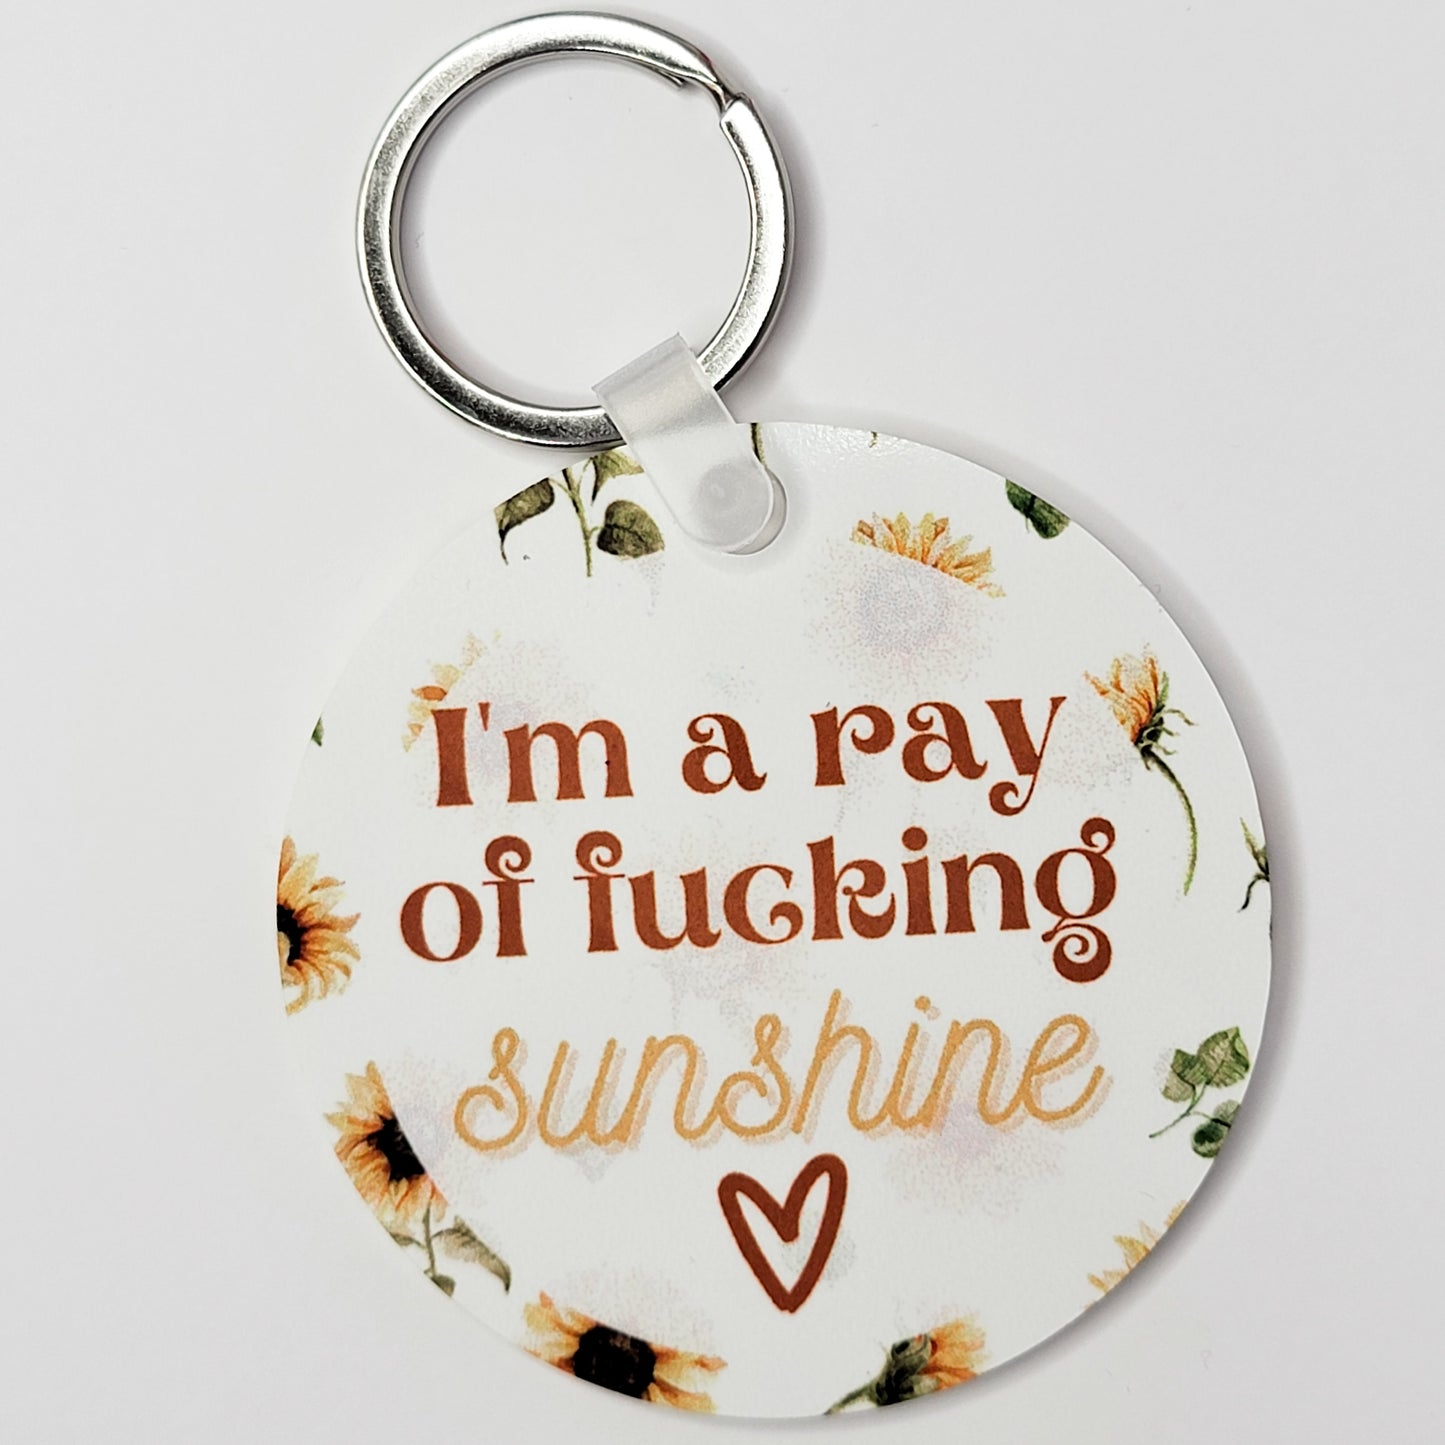 I'm A Ray Of Fucking Sunshine Keychain